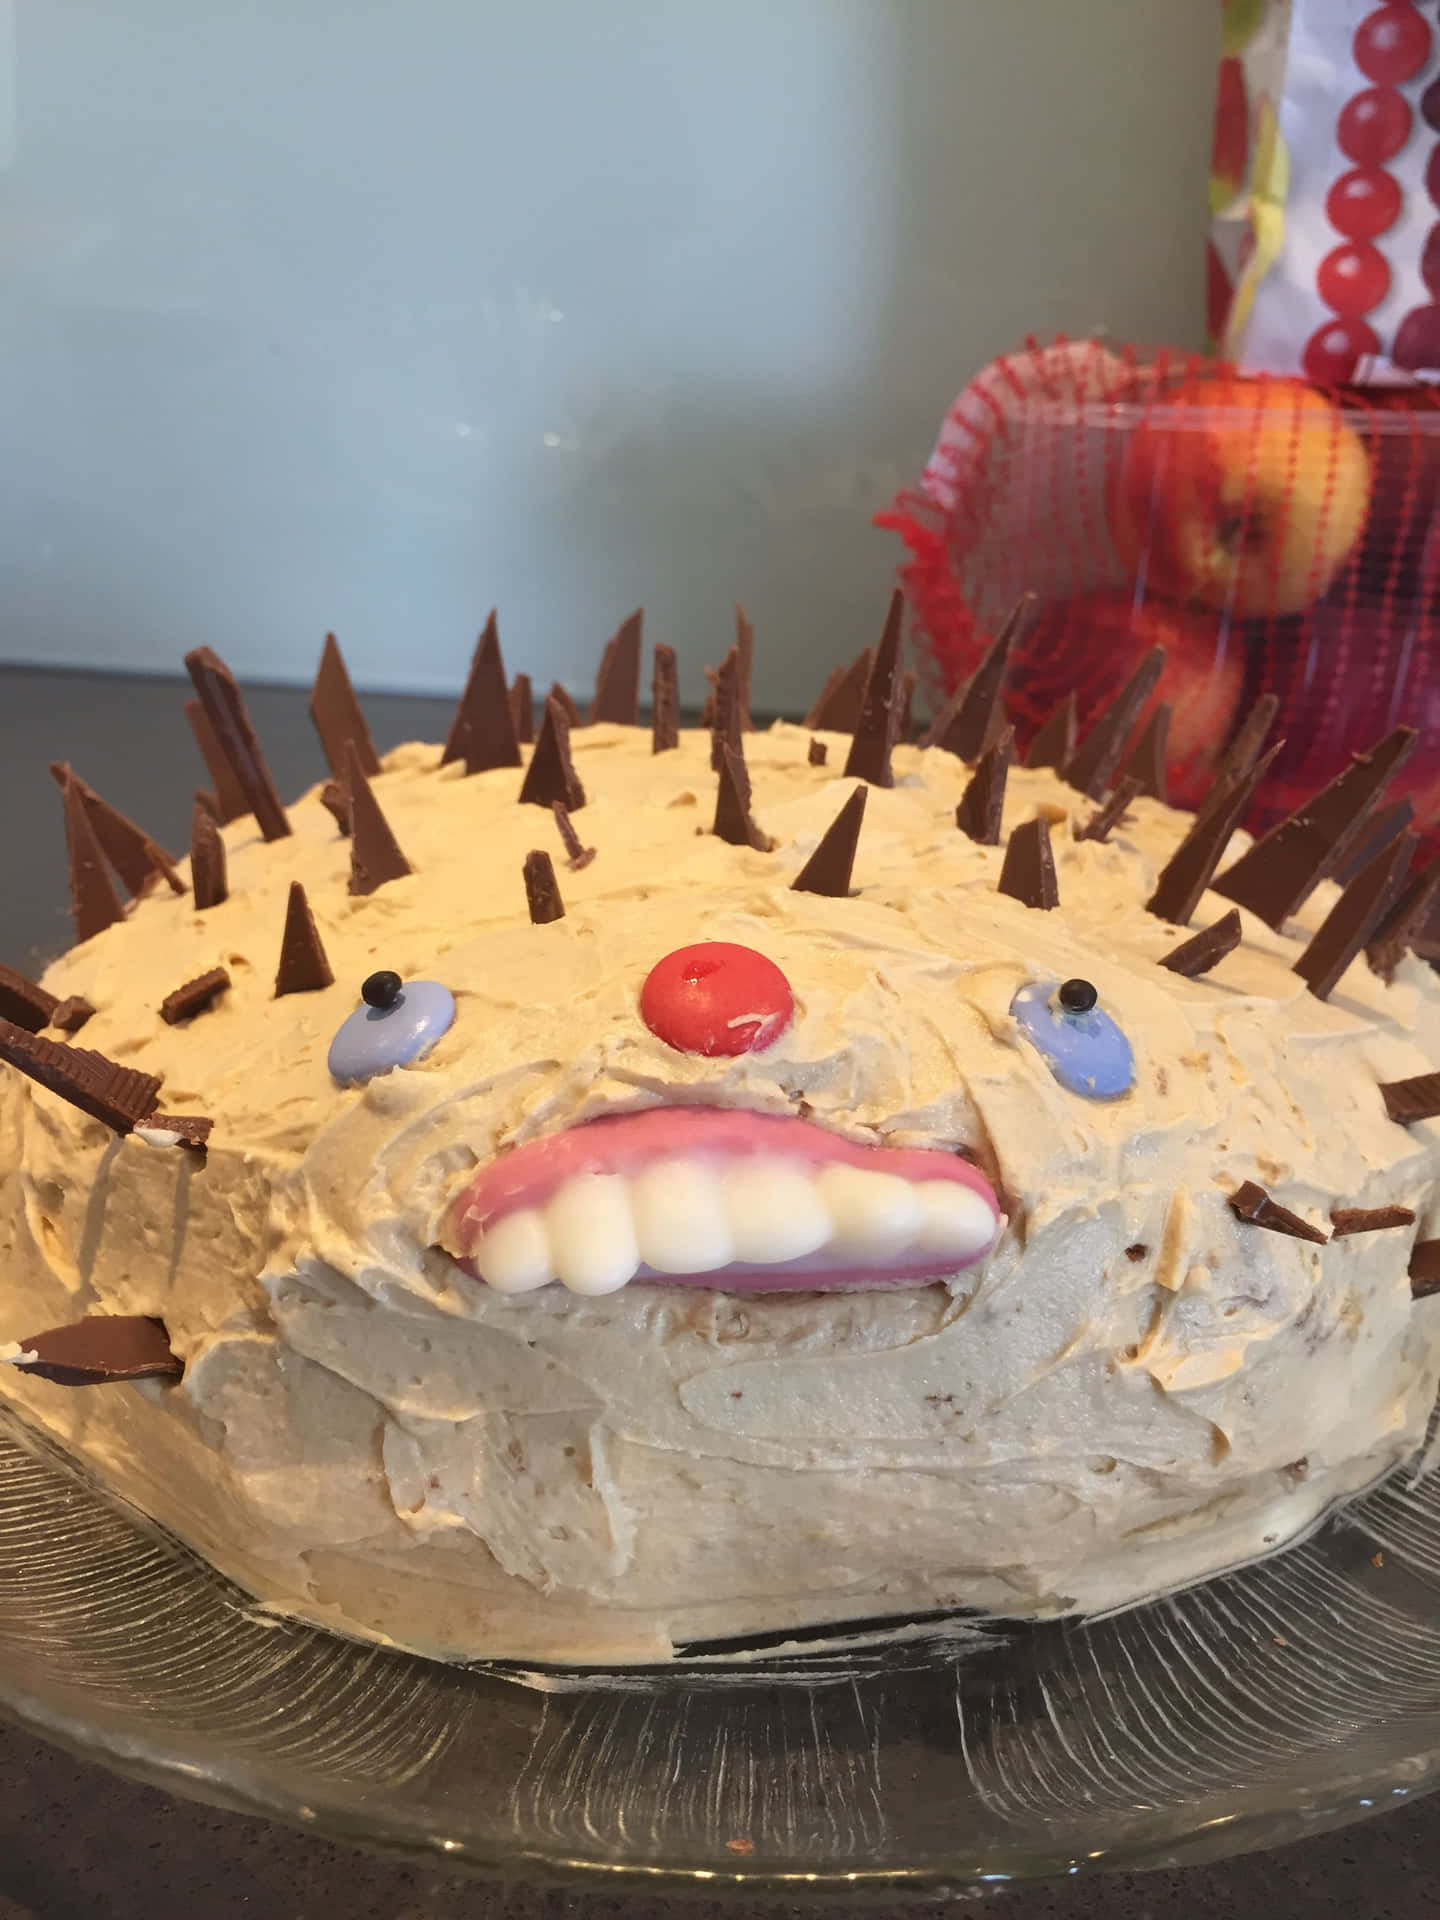 A Cake With A Hedgehog Face